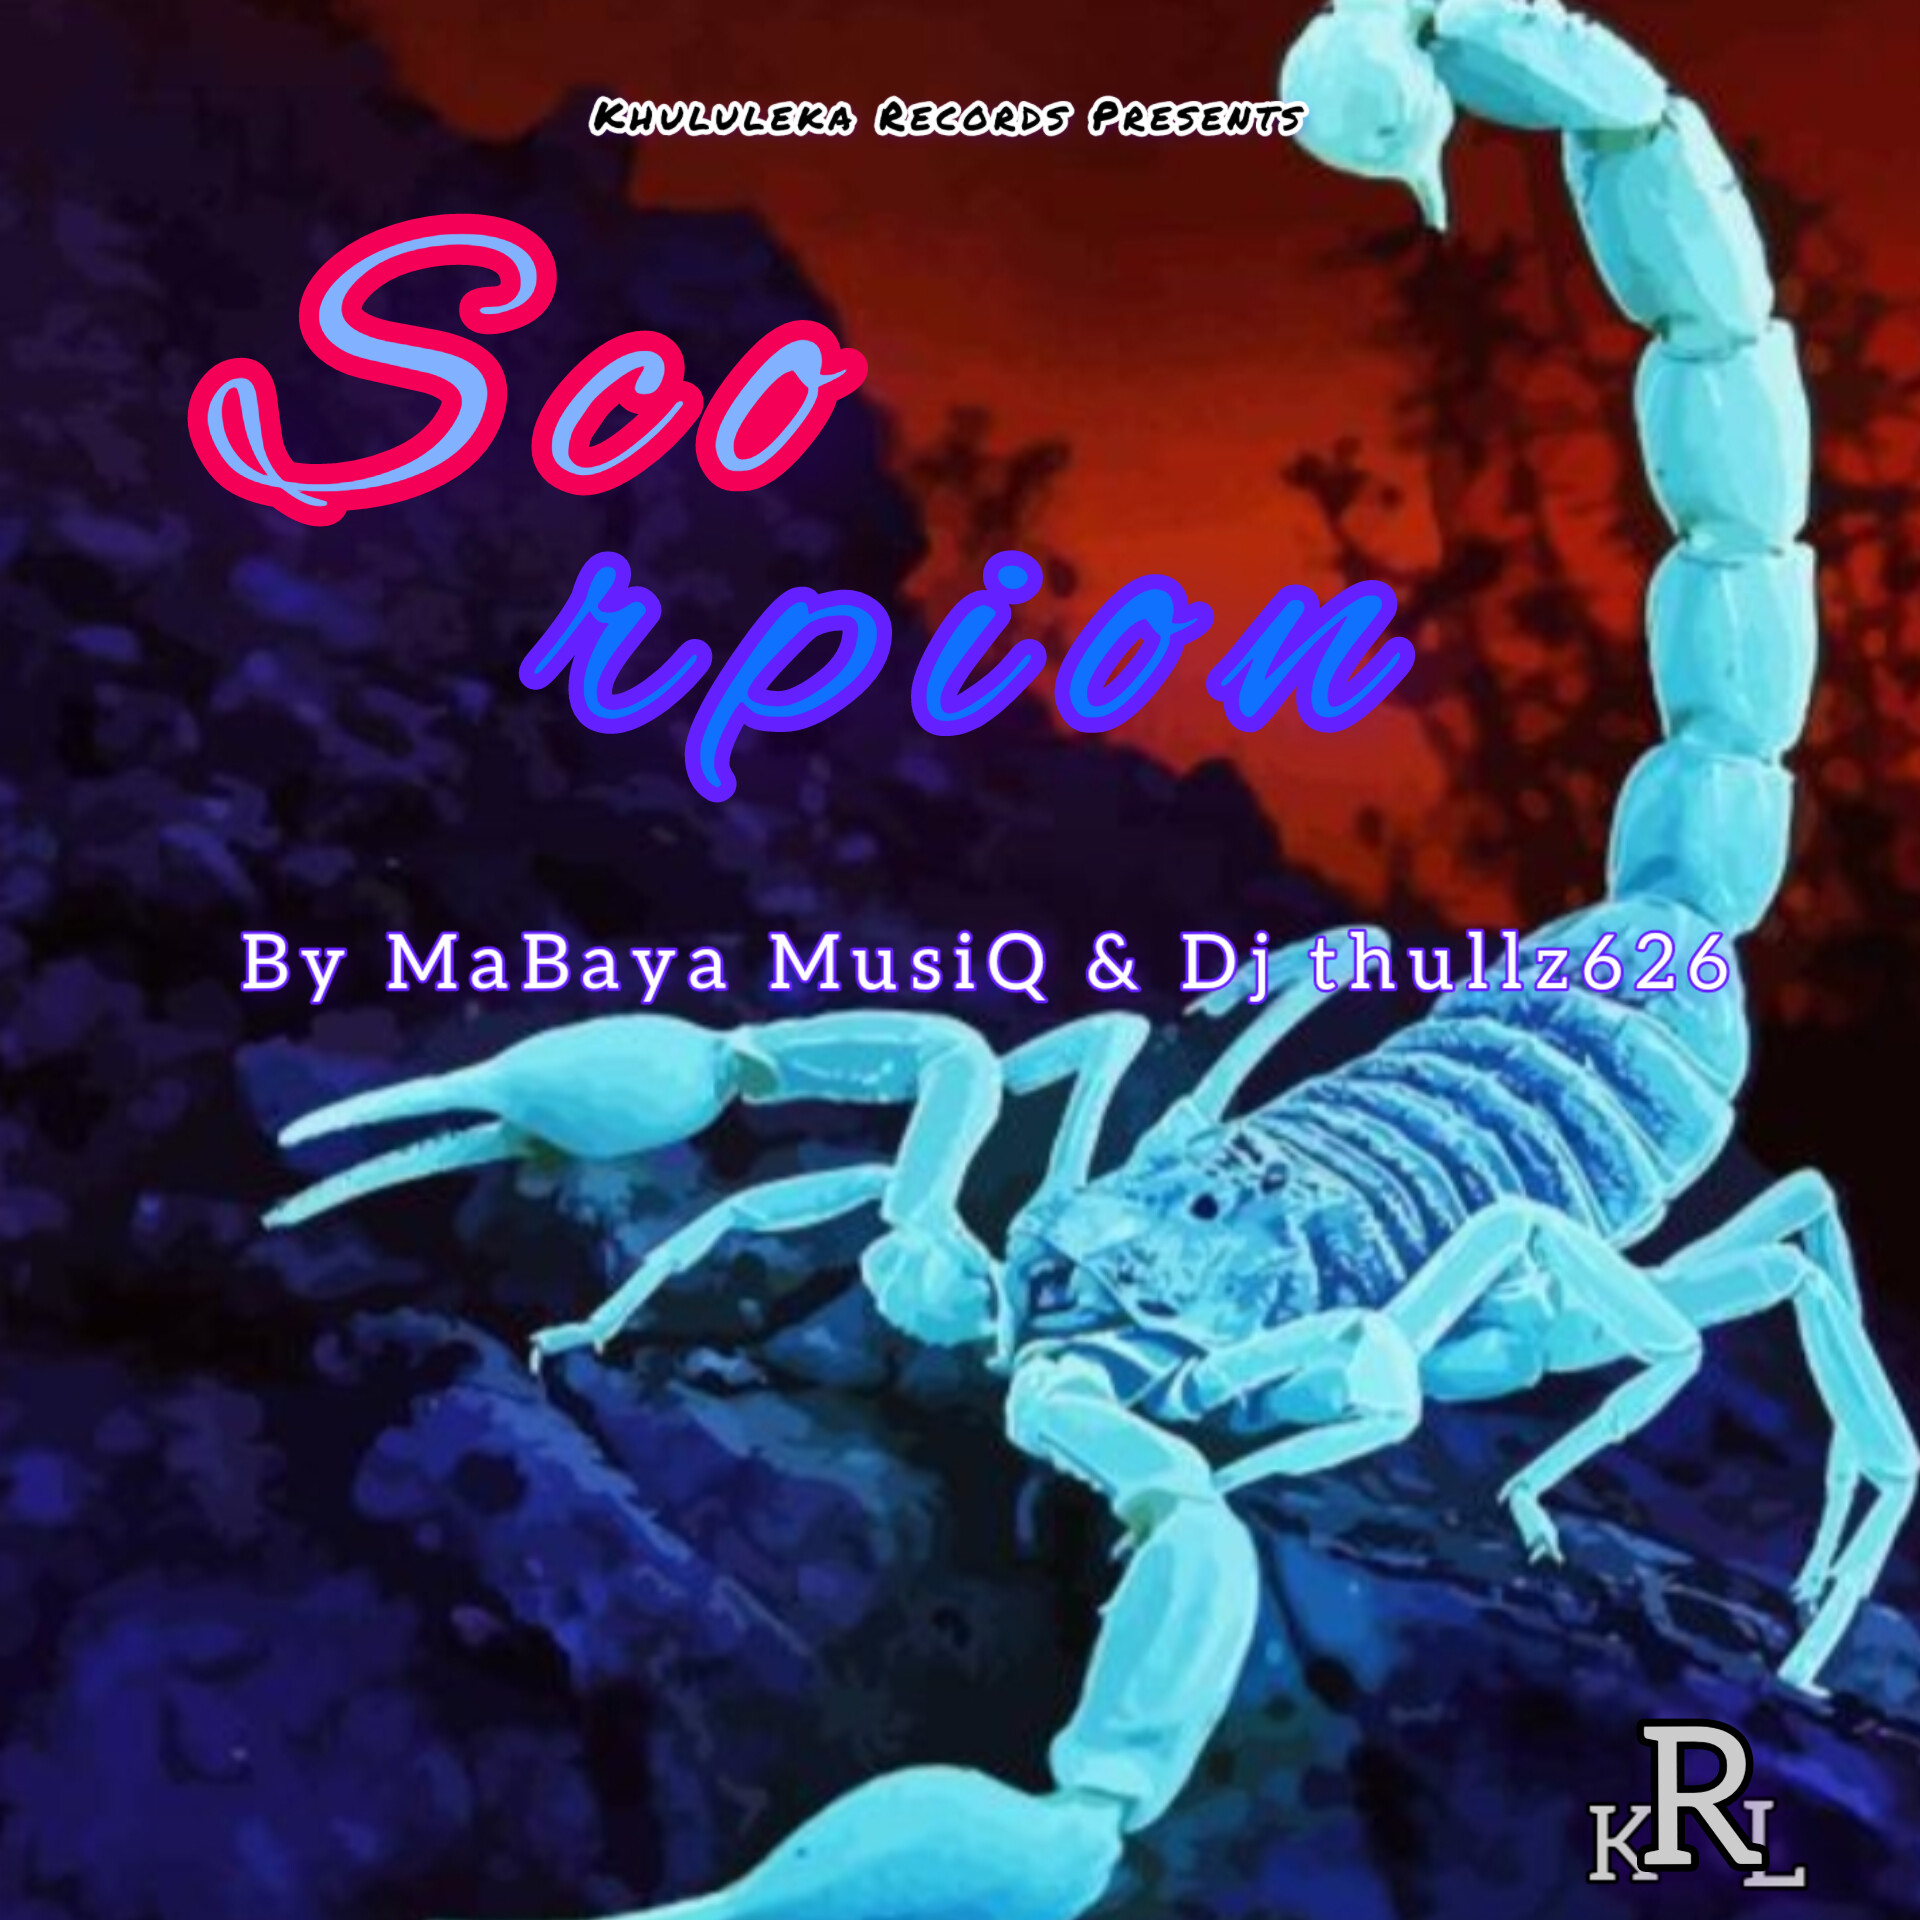 Scorpion - MaBaya MusiQ & Dj thullz626